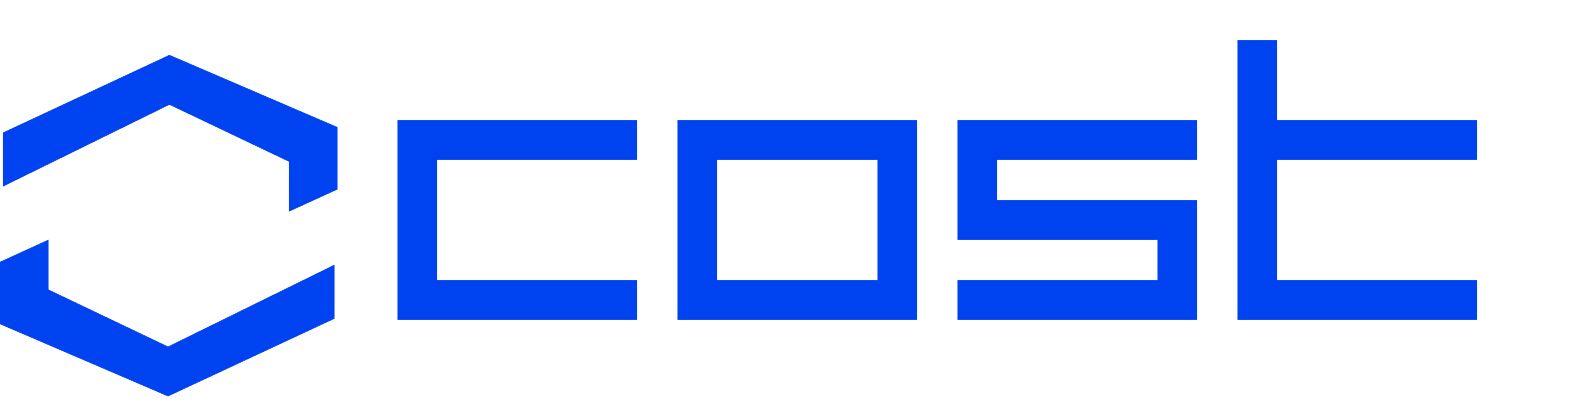 COST logo